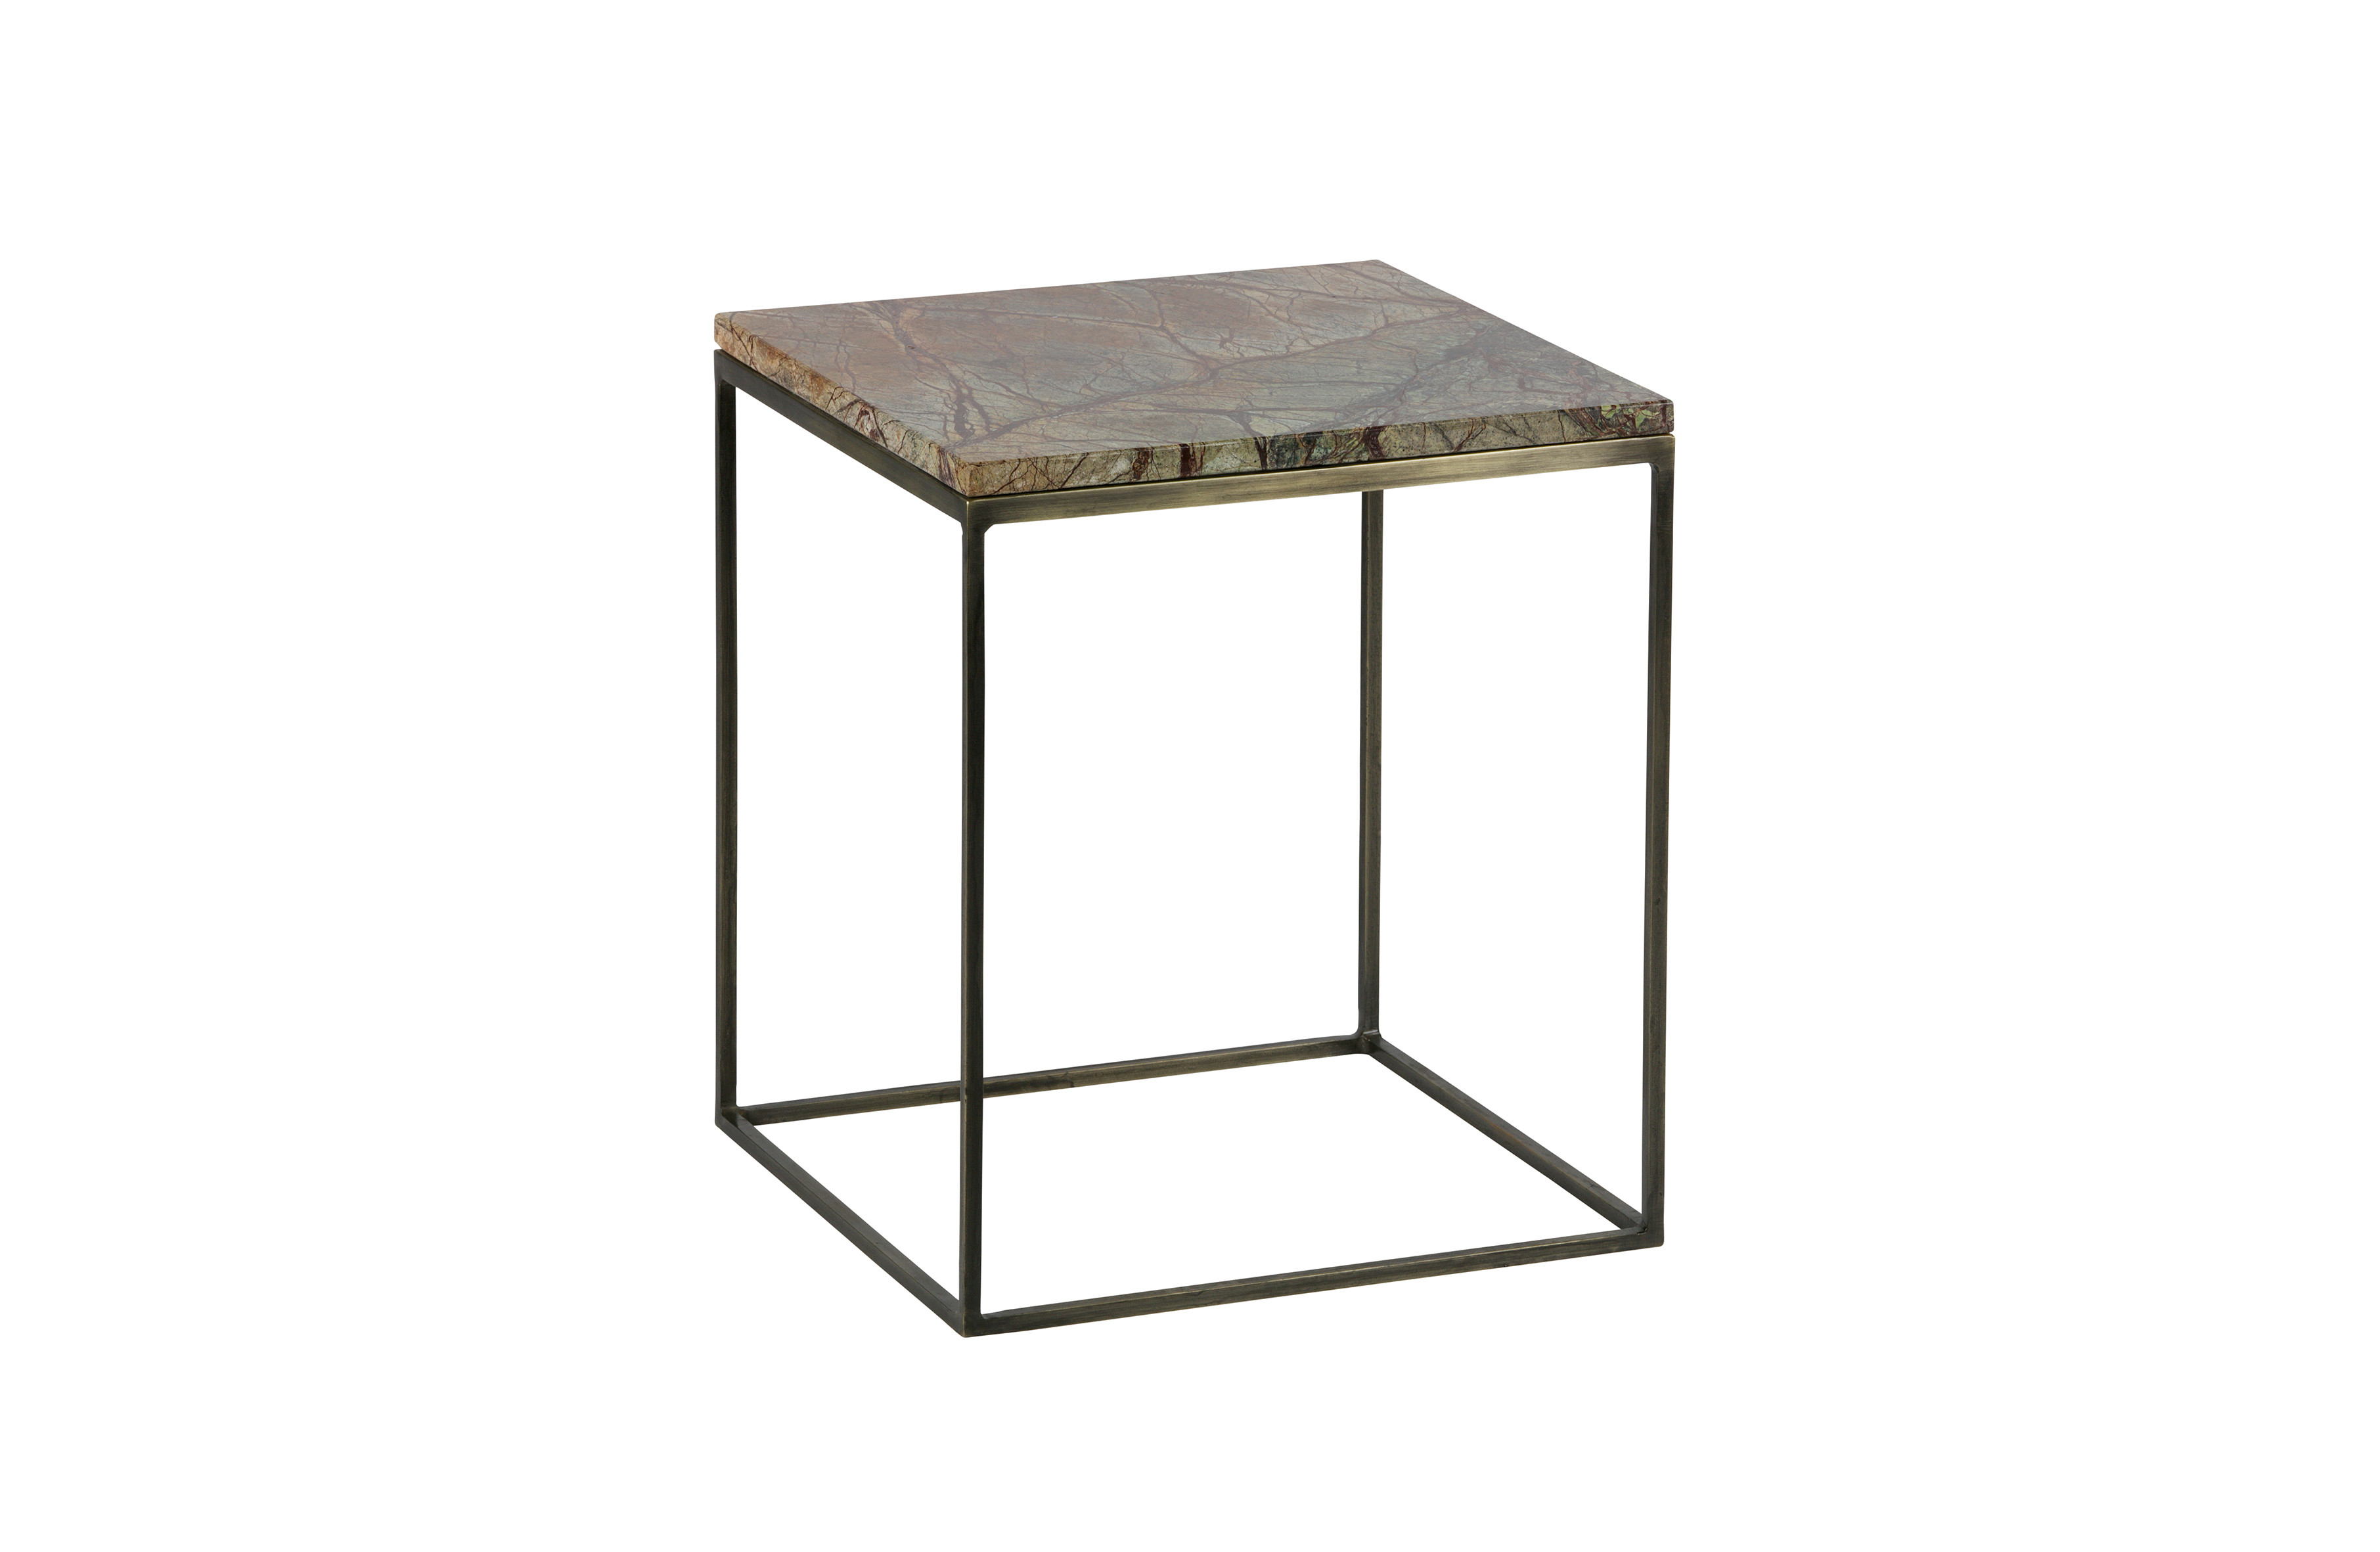 Rent a Side table Mellow set v2 antique Brass? Rent at KeyPro furniture rental!